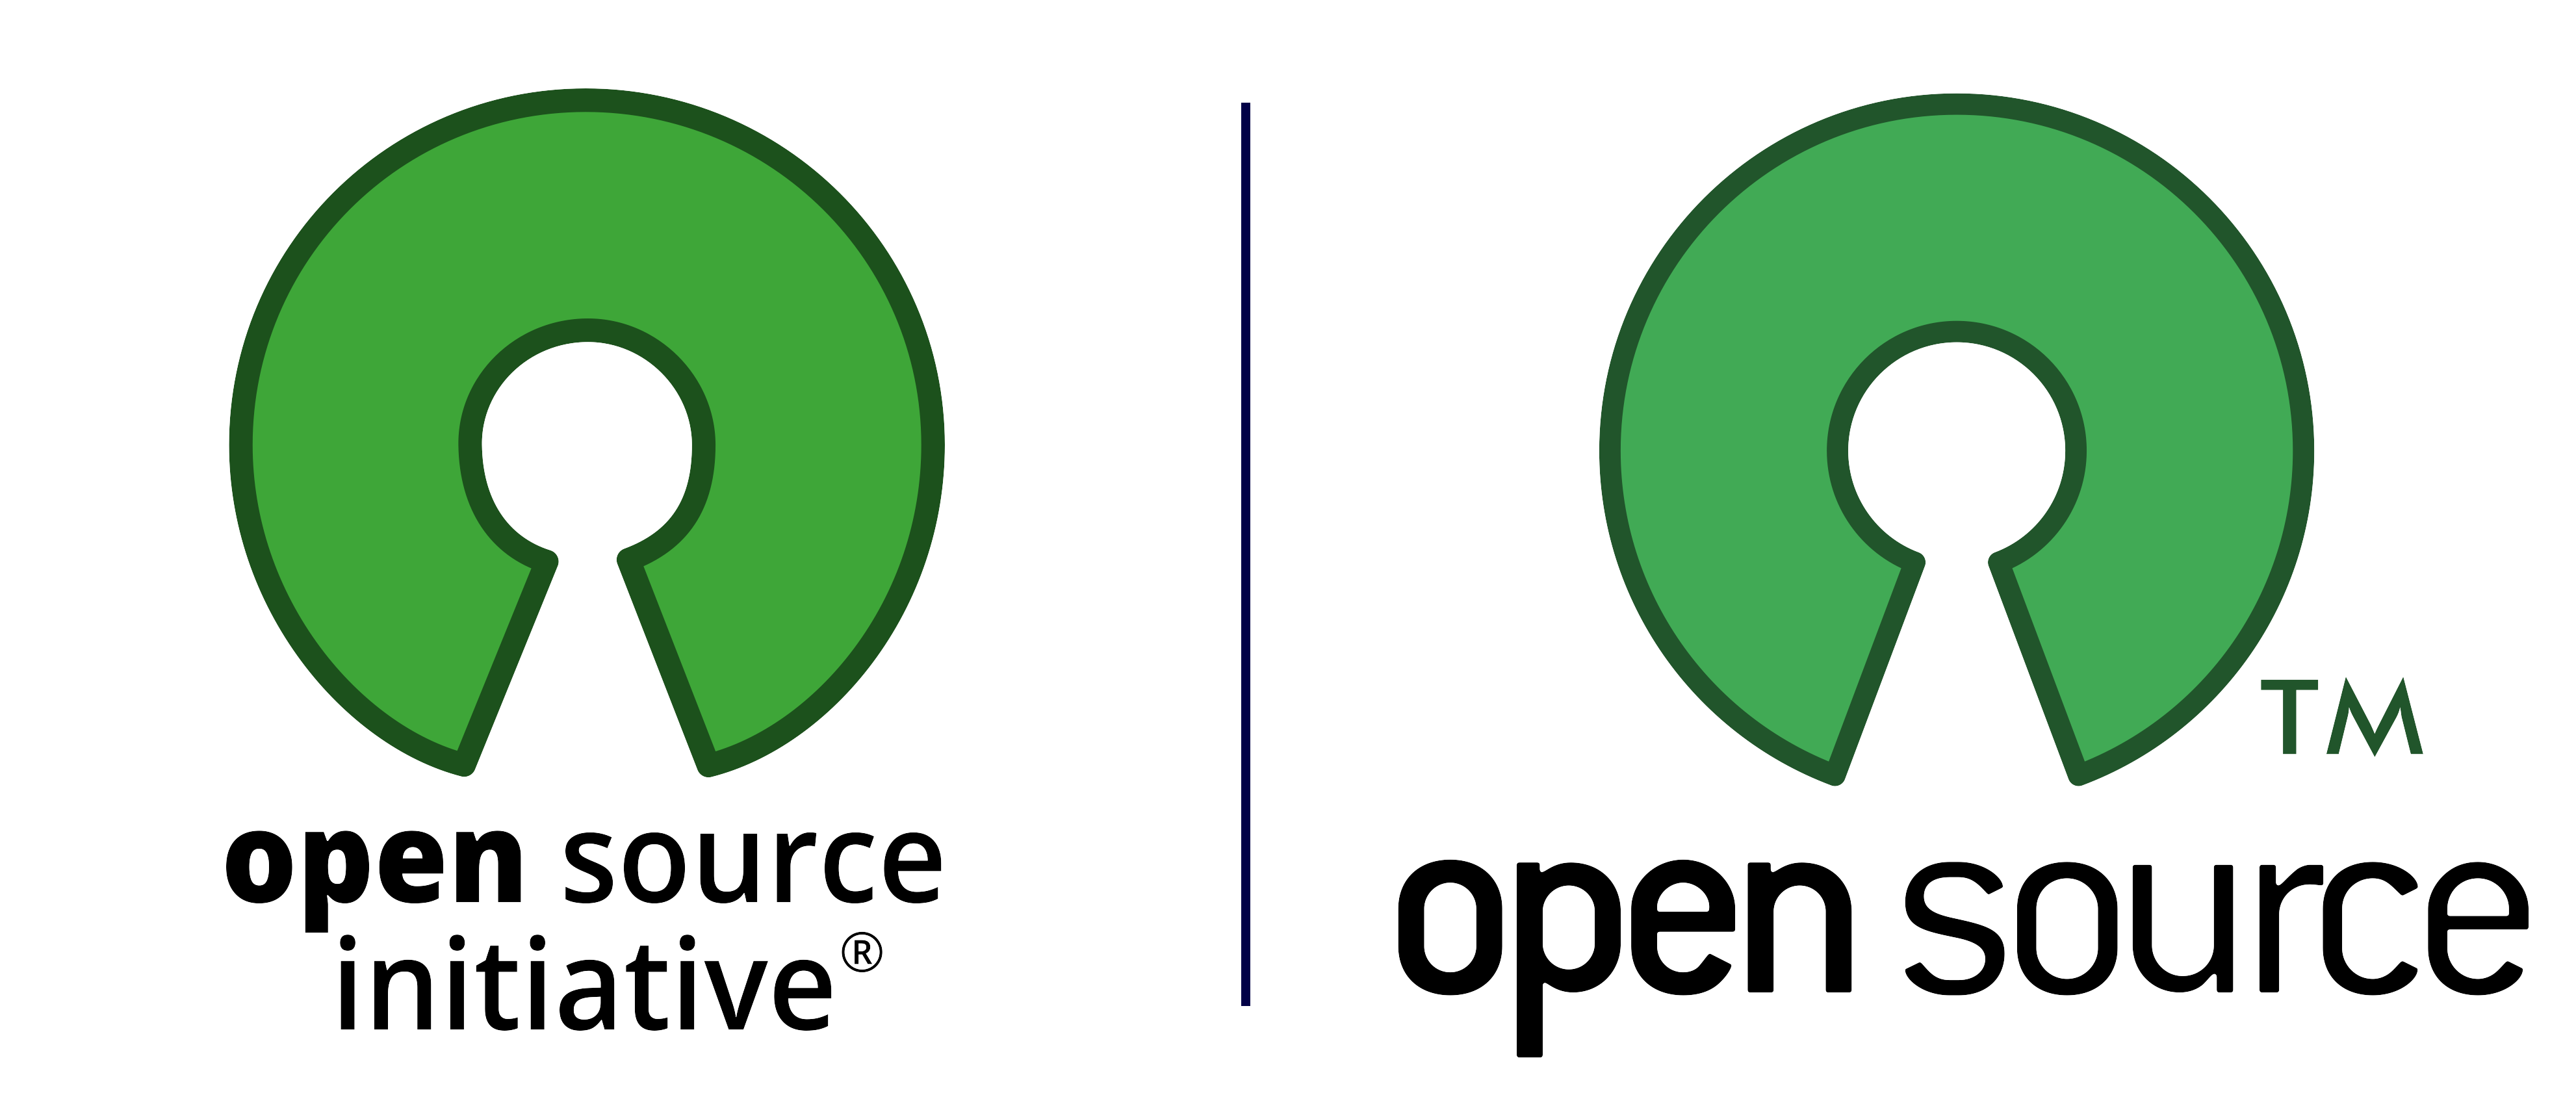 Das Logo der Open Source Initiative und das offizielle Open Source Logo